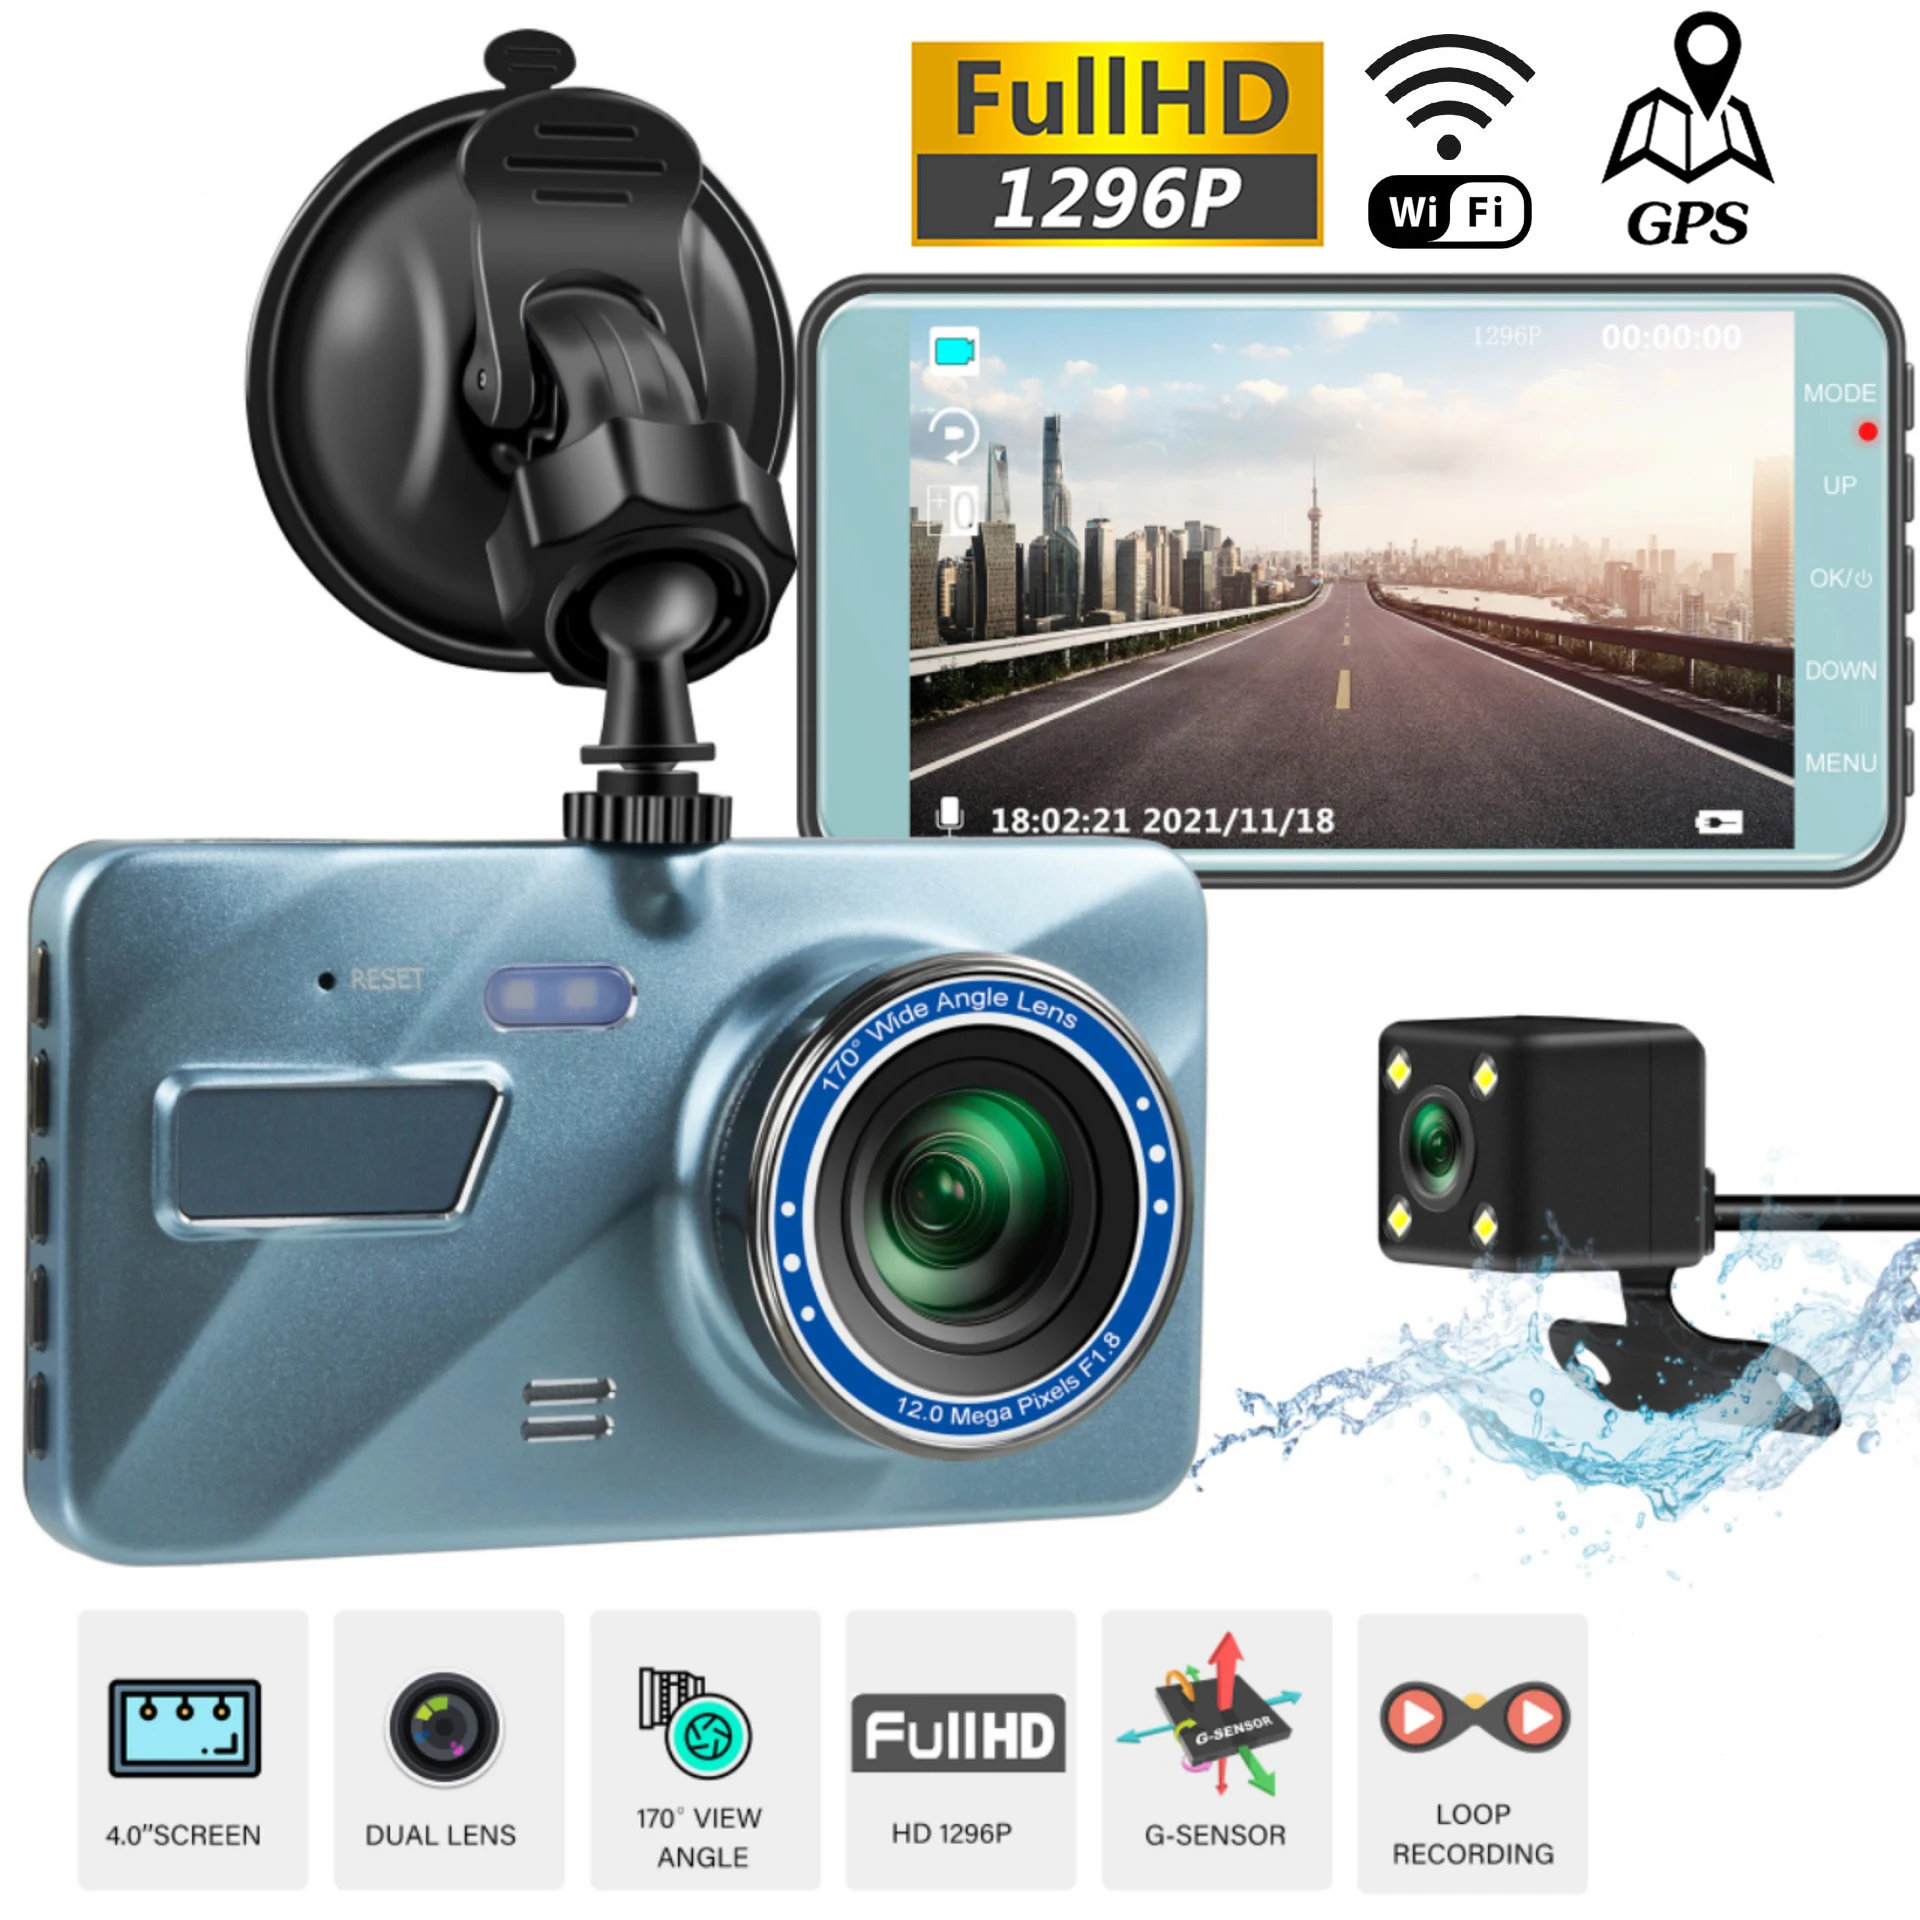 

Автомобильный видеорегистратор Wi-Fi Full HD 1080P, видеорегистратор с камерой заднего вида, видеорегистратор с черным корпусом и функцией ночного видения, Автомобильный видеорегистратор, автомобильная камера, GPS-трекер